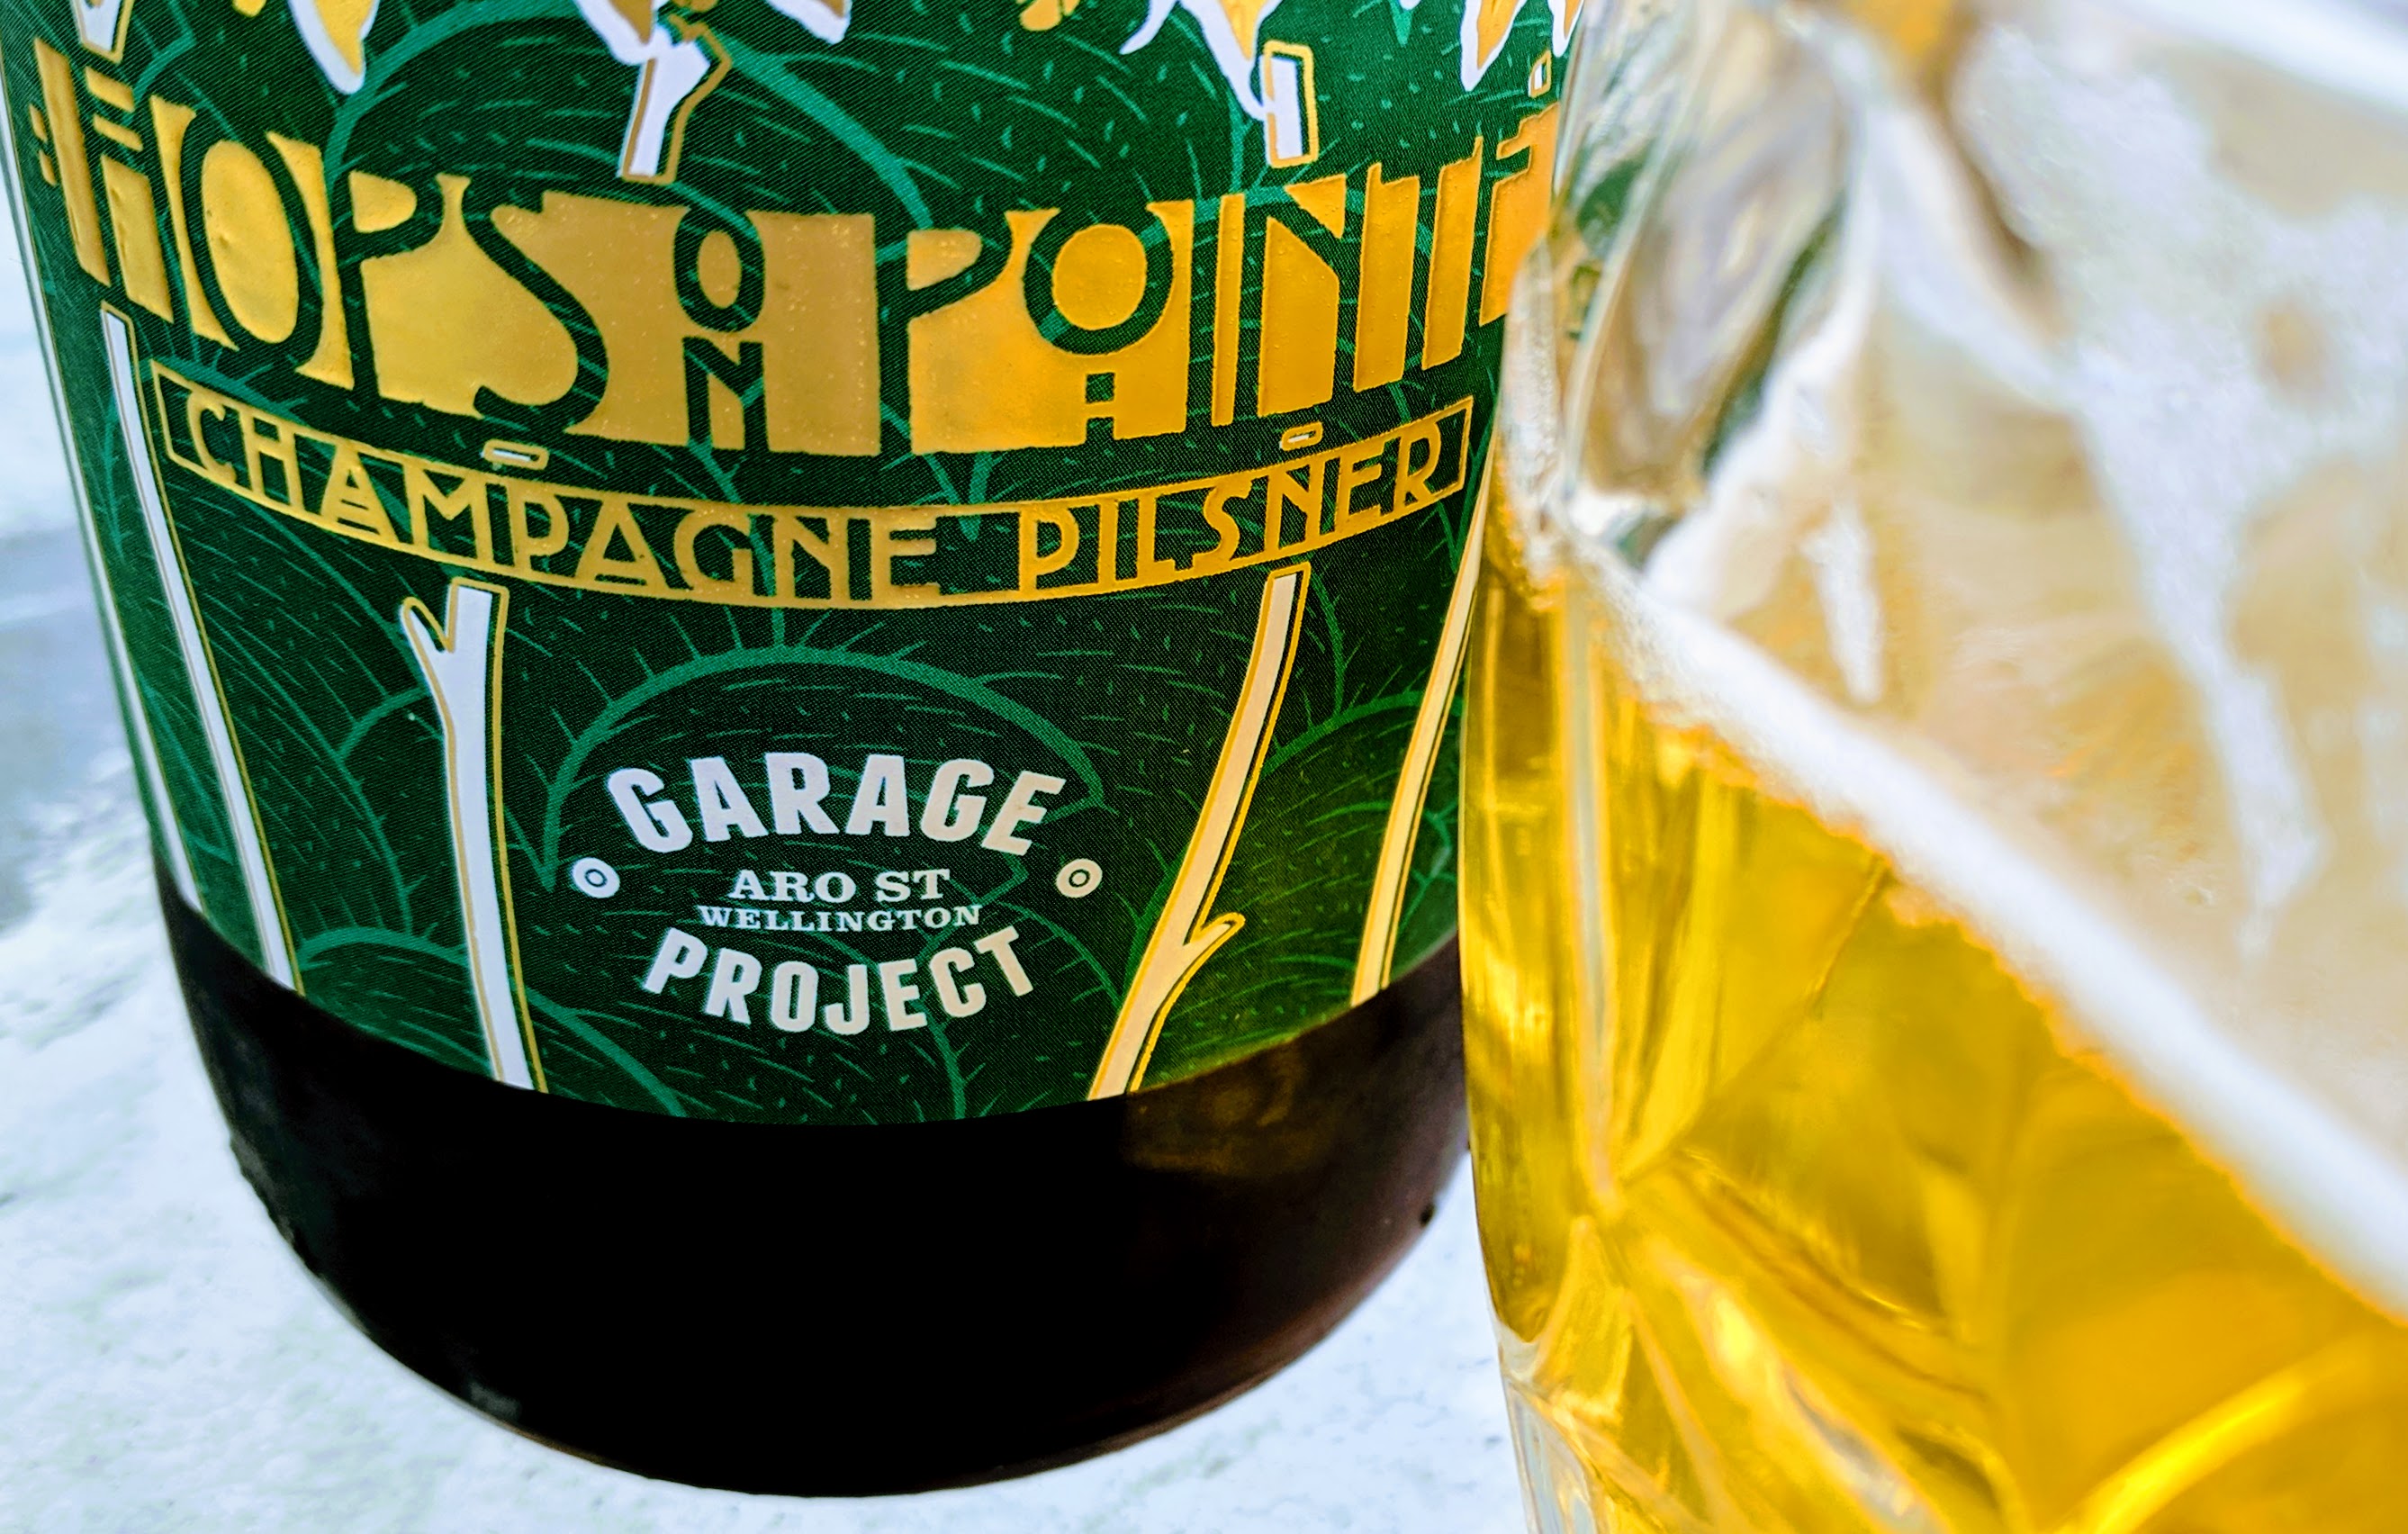 Garage Project Champagne Pilsner